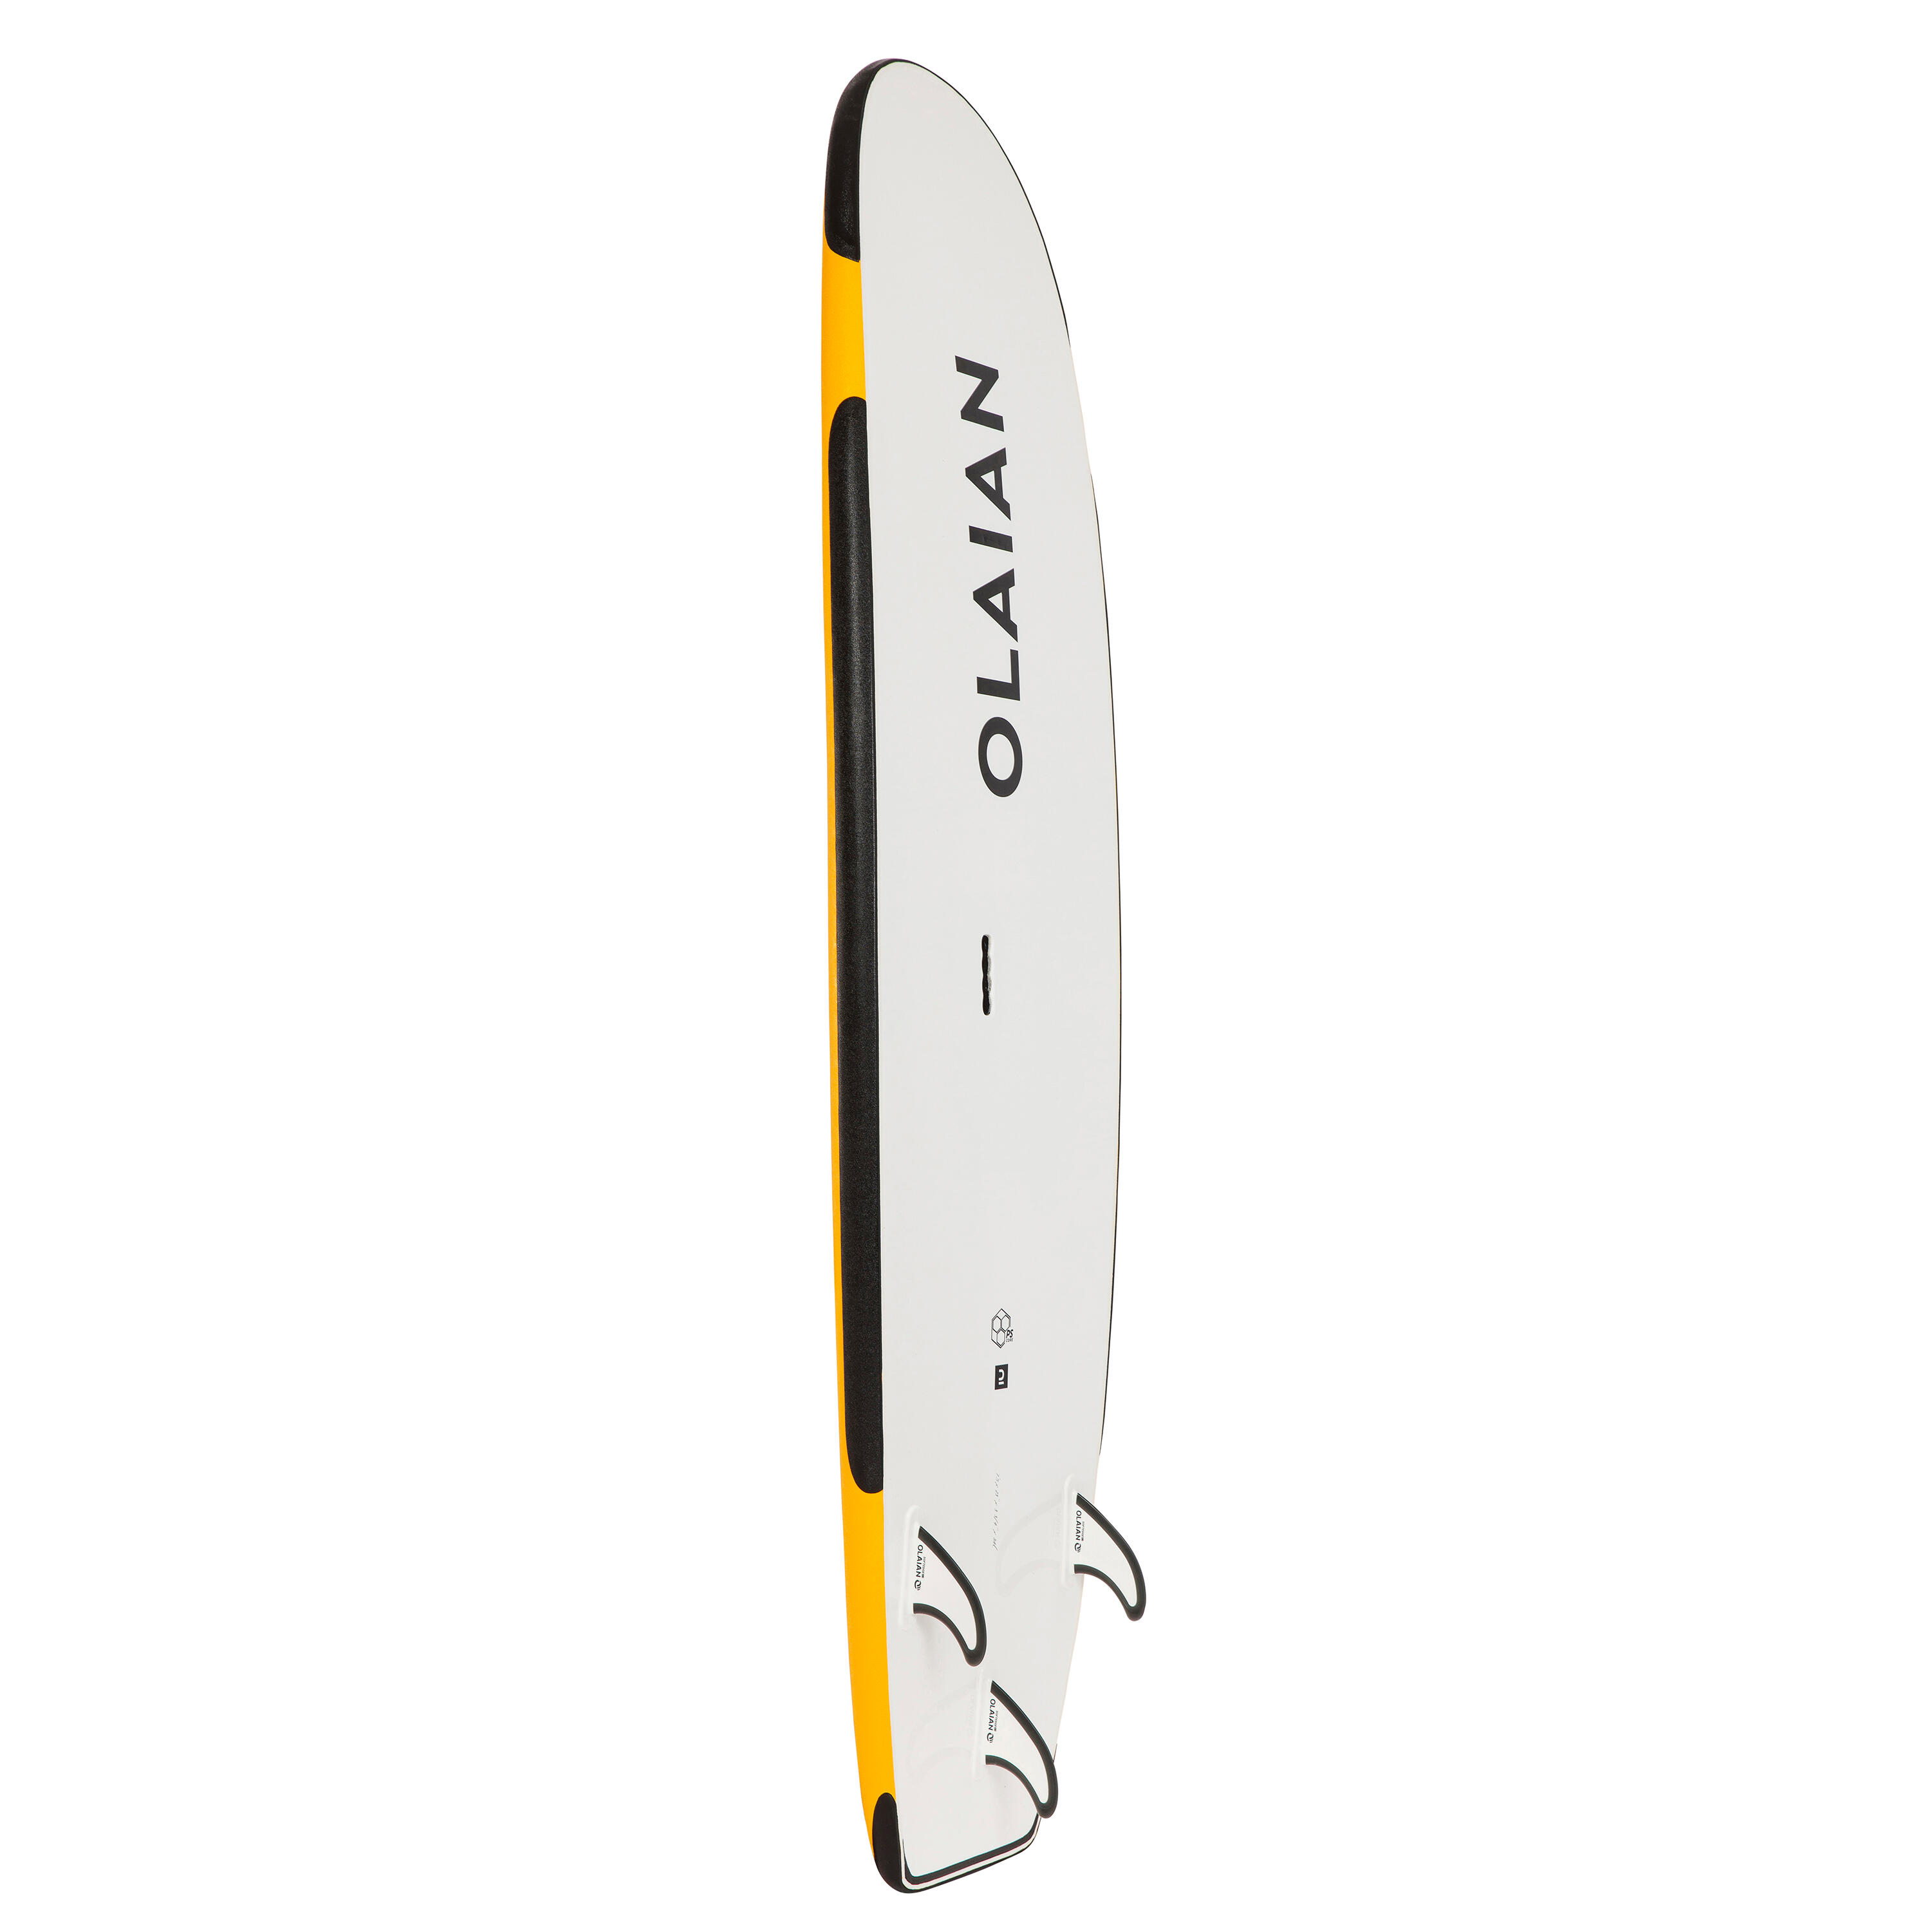 84 L Reinforced Foam Surfboard with Leash - 100 Yellow - OLAIAN